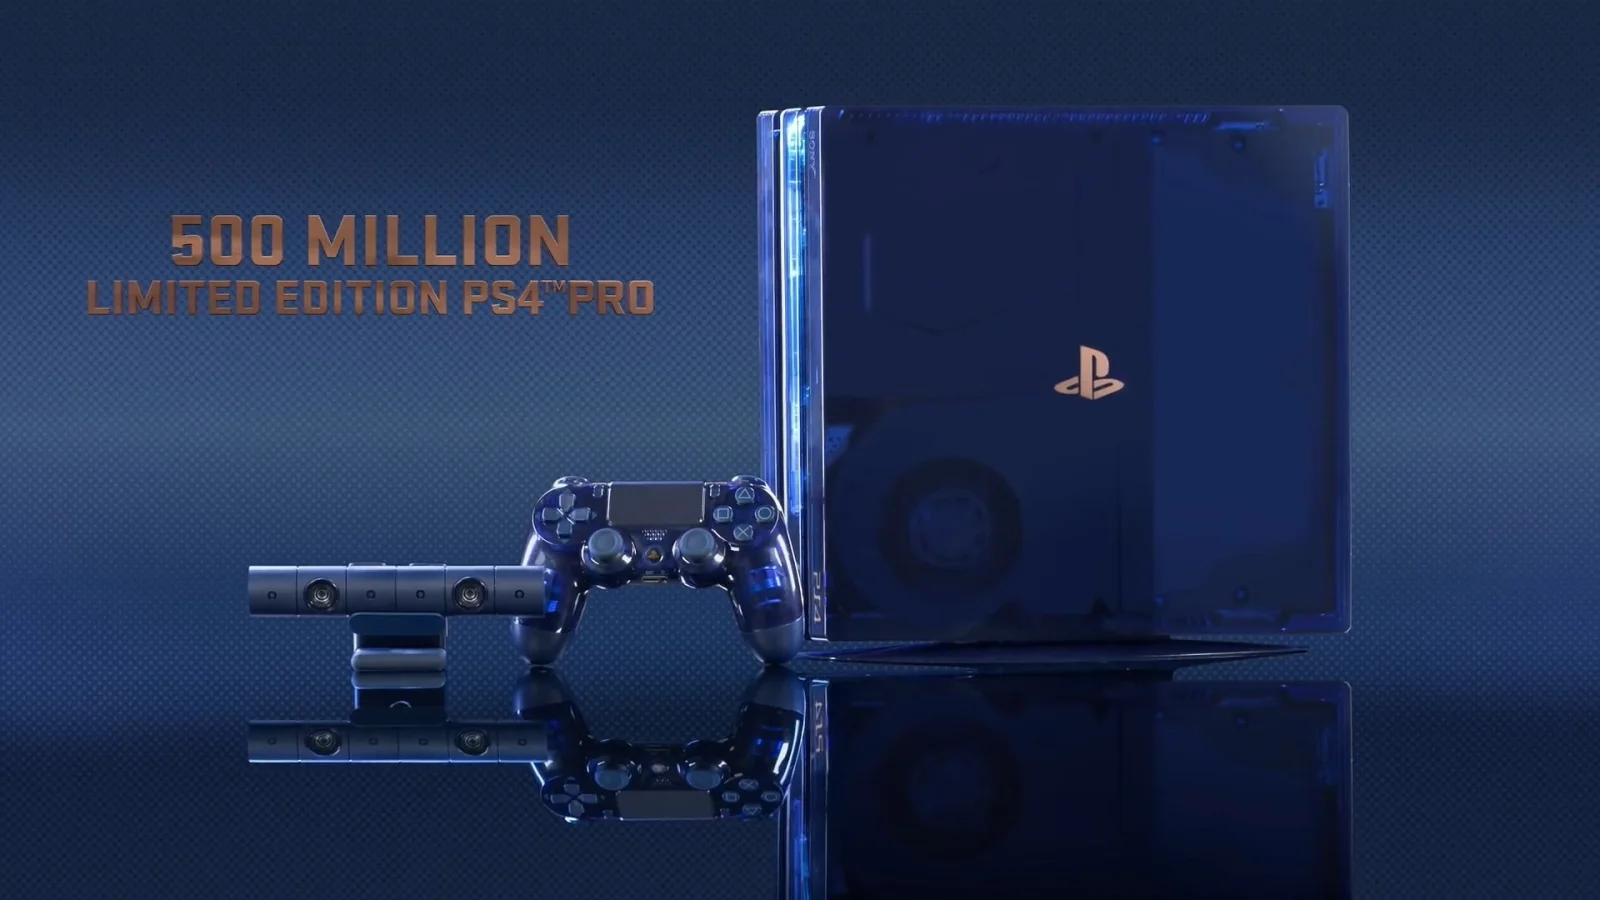 性感的透明外壳 PS4 Pro 来了！8月24日国内同步发售